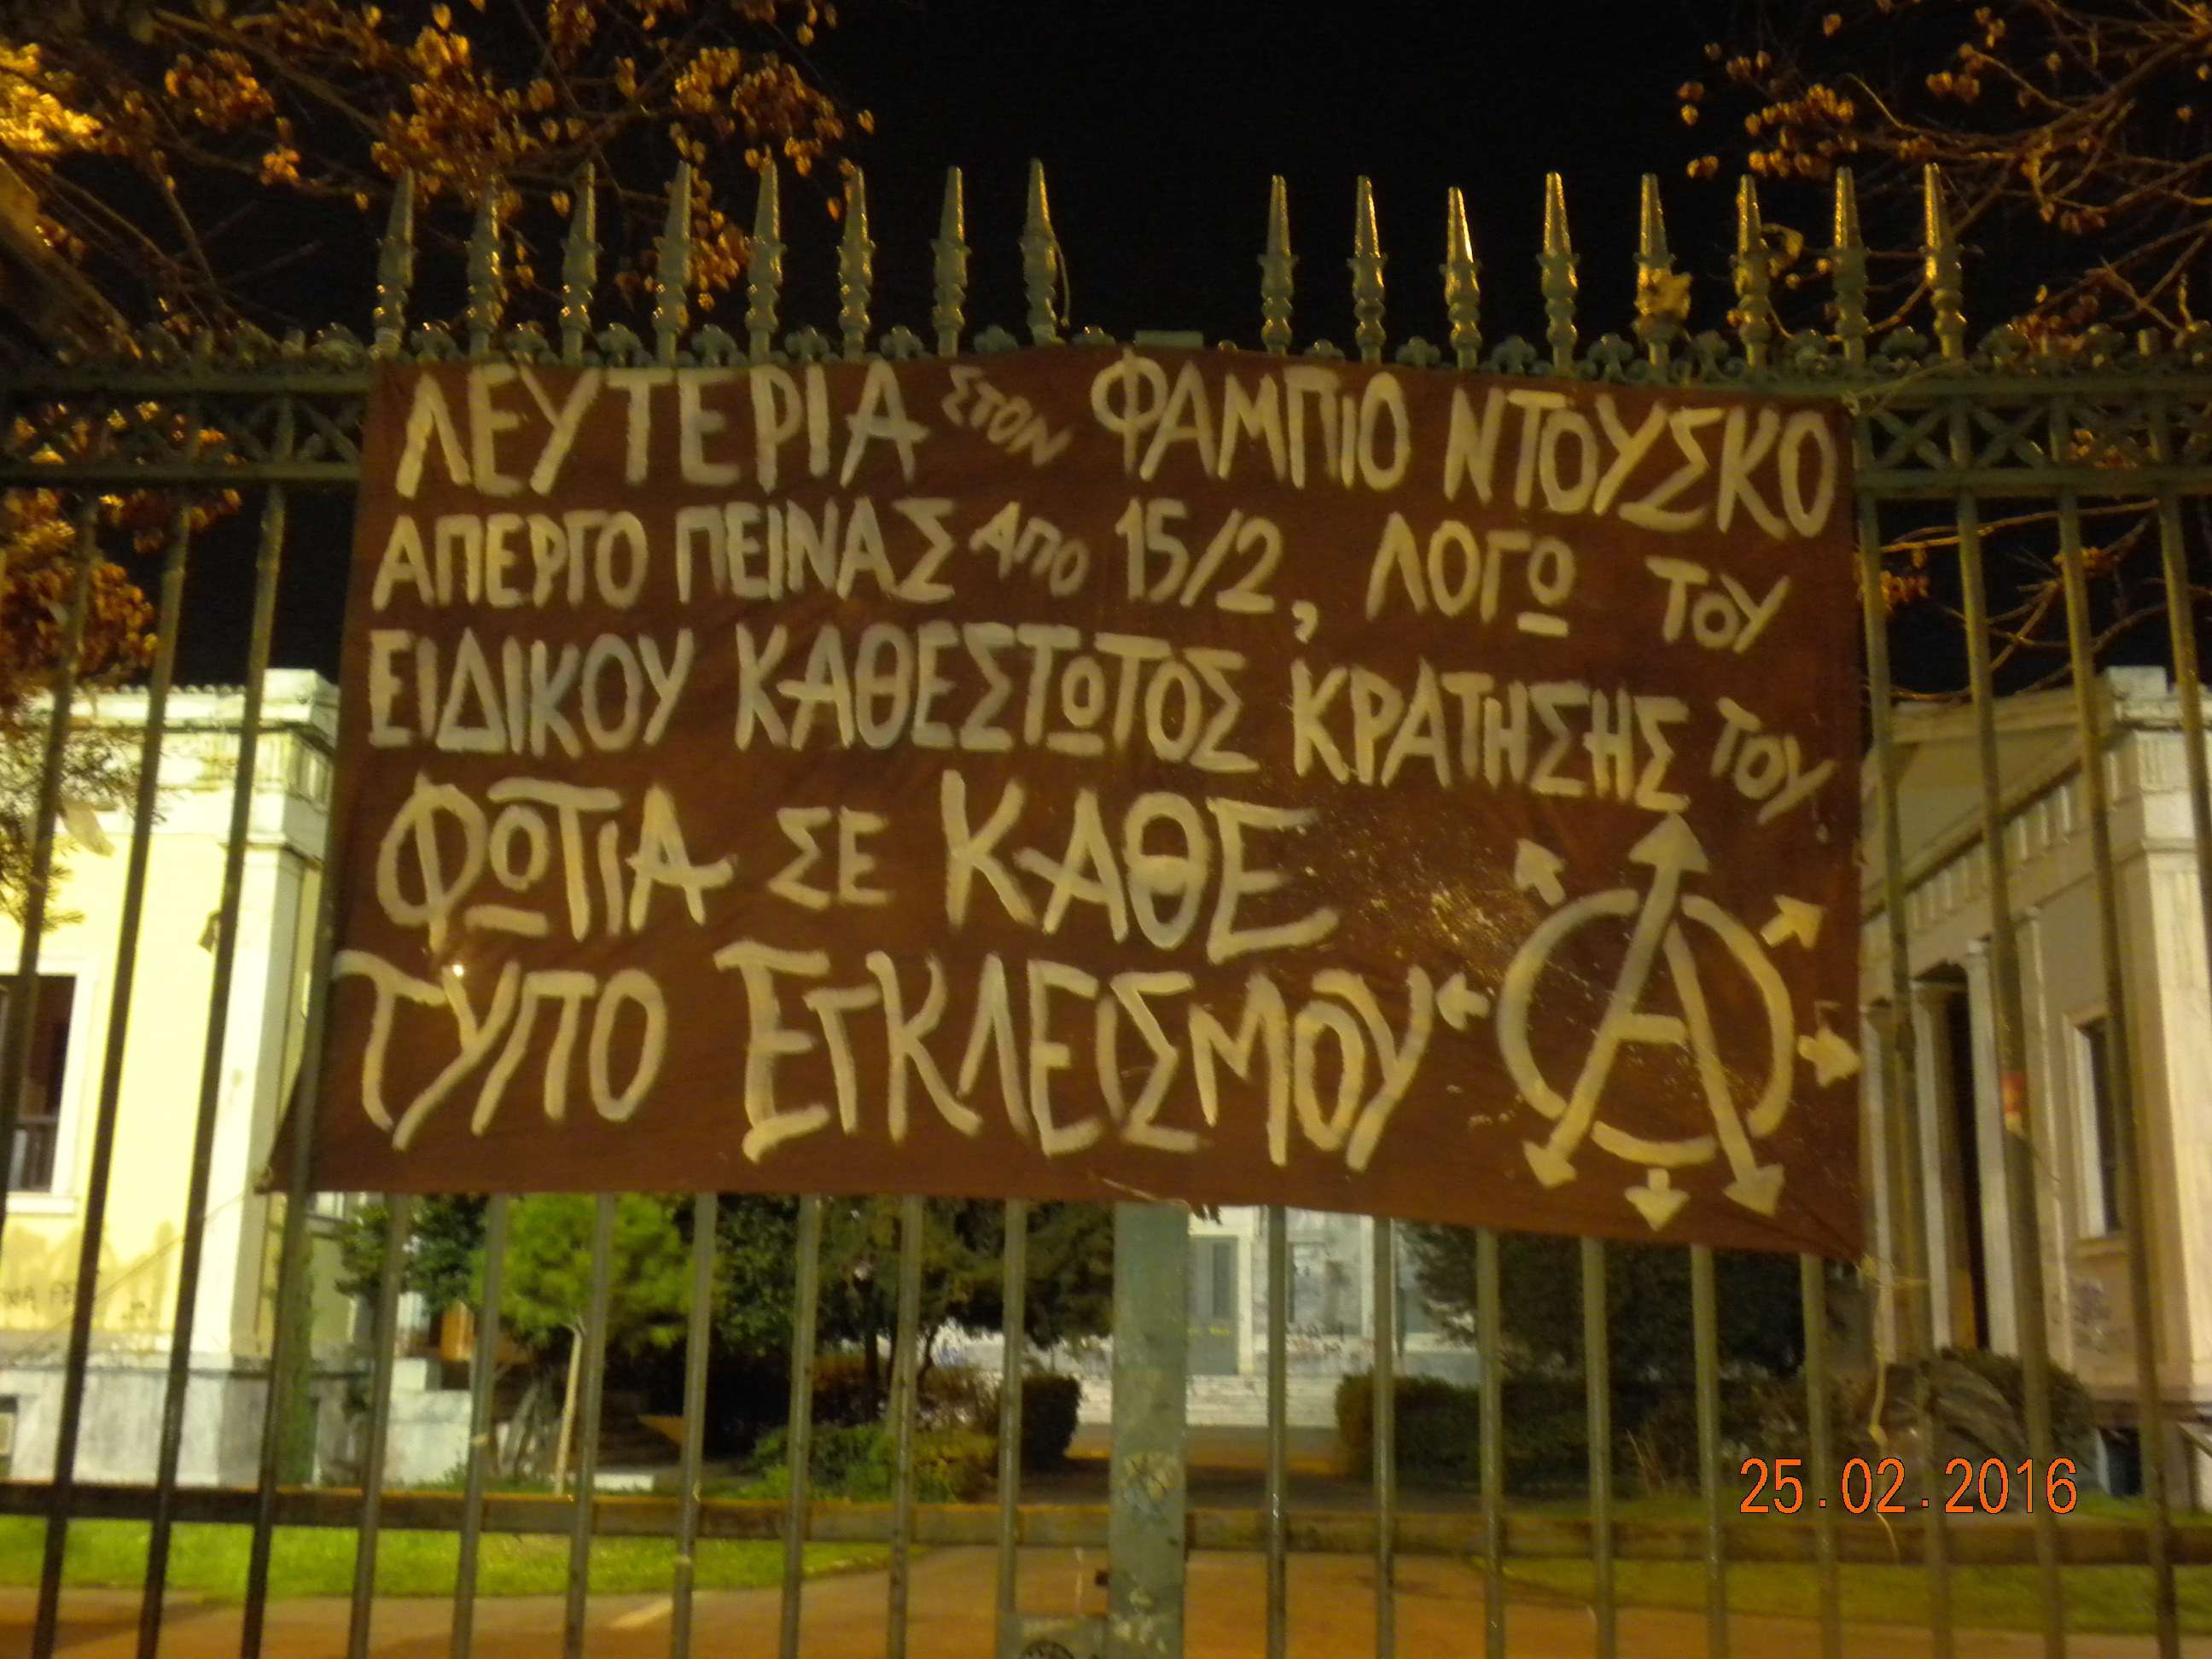 Οχετός: Πανό και συνθήματα αλληλεγγύης στον Φάμπιο Ντούσκο